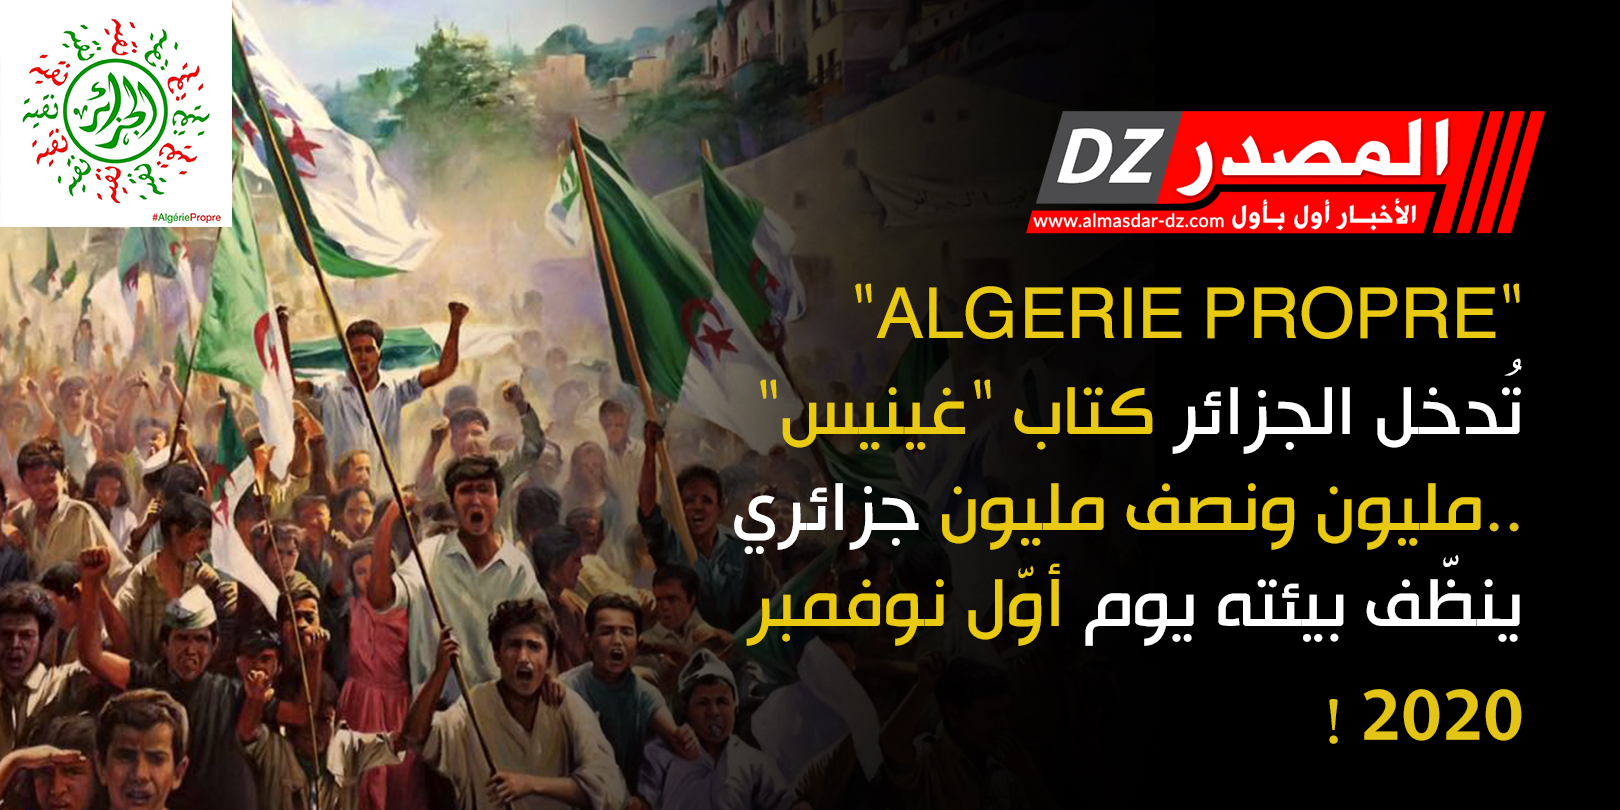 2018/01/algerie.jpg